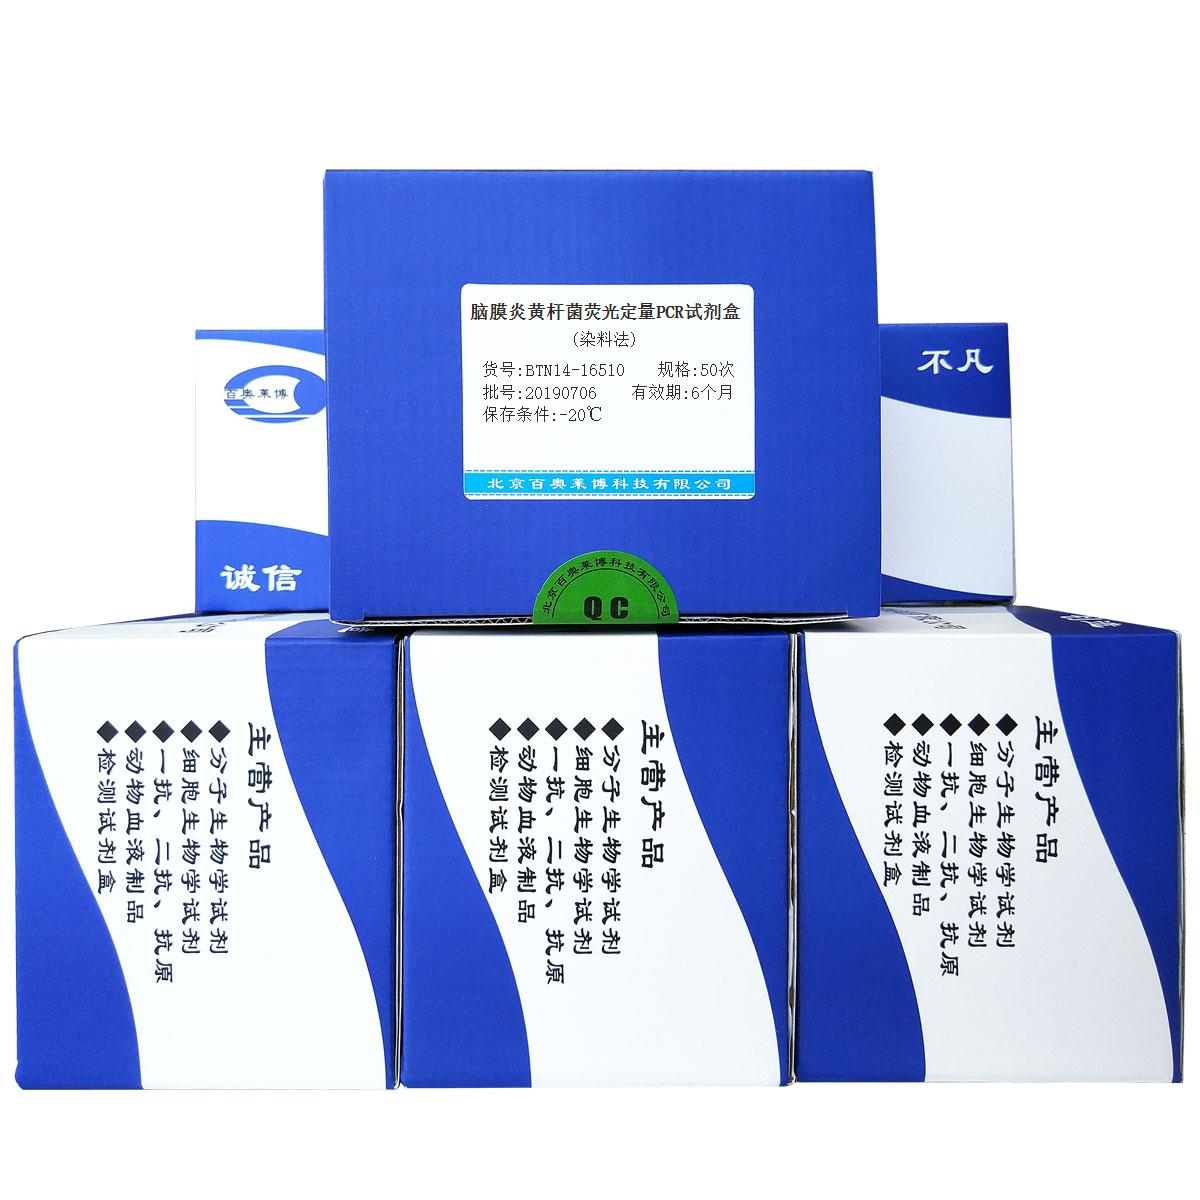 脑膜炎黄杆菌荧光定量PCR试剂盒(染料法)